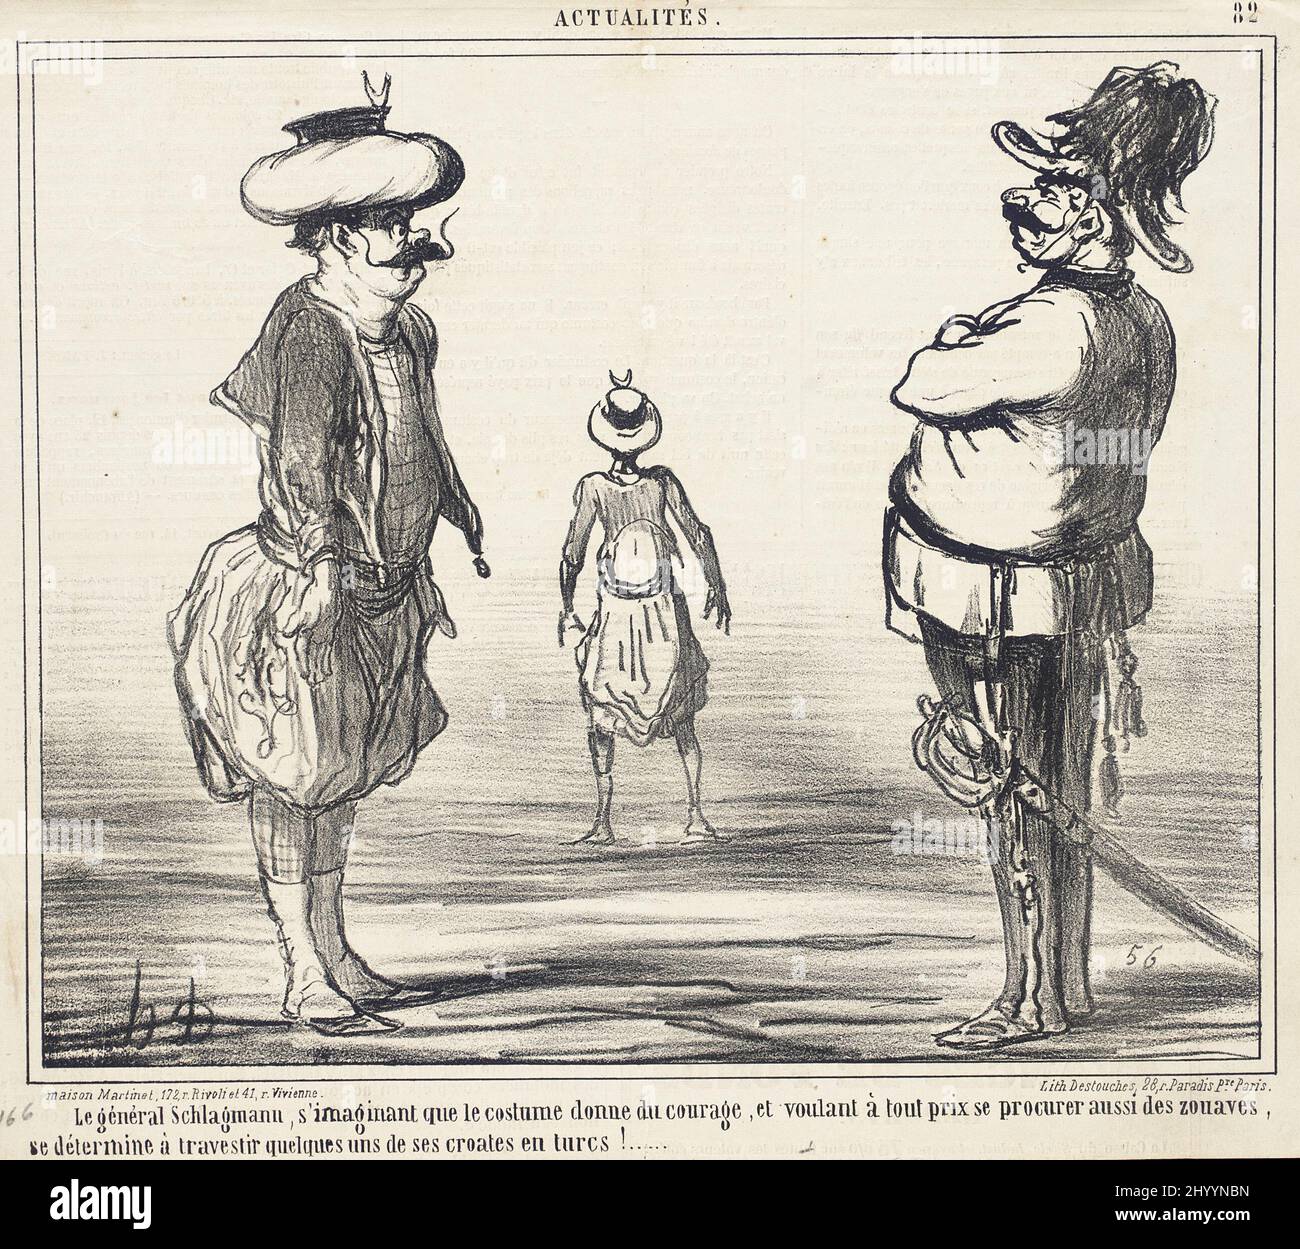 Le Général Schlick, s'imaginant que le traje donne du Courage.... Honoré Daumier (Francia, Marsella, 1808-1879). Francia, 1859. Impresiones; litografías. Litografía Foto de stock